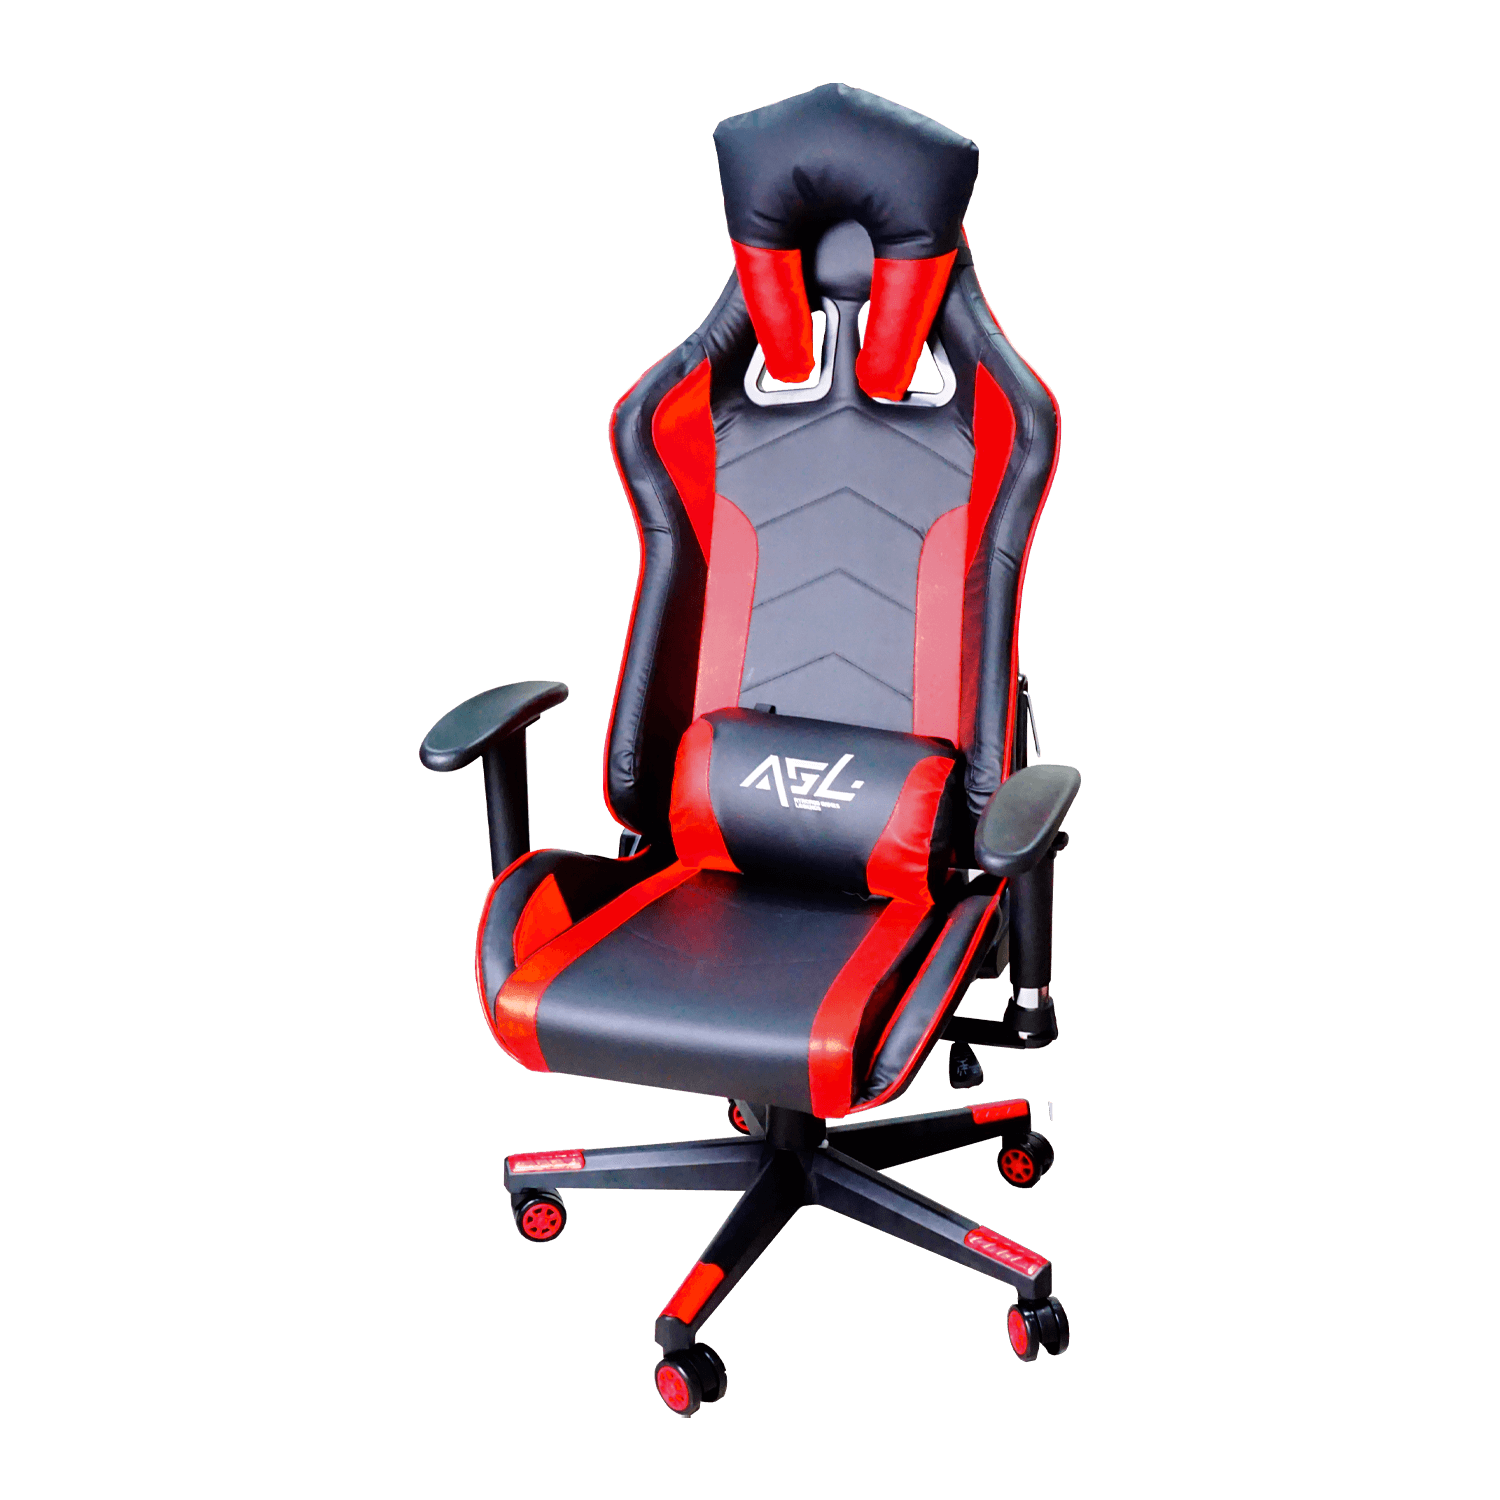 Cadeira Gamer Goline AGL Extreme Comfort - Preto e Vermelho (AGL-XTC1)